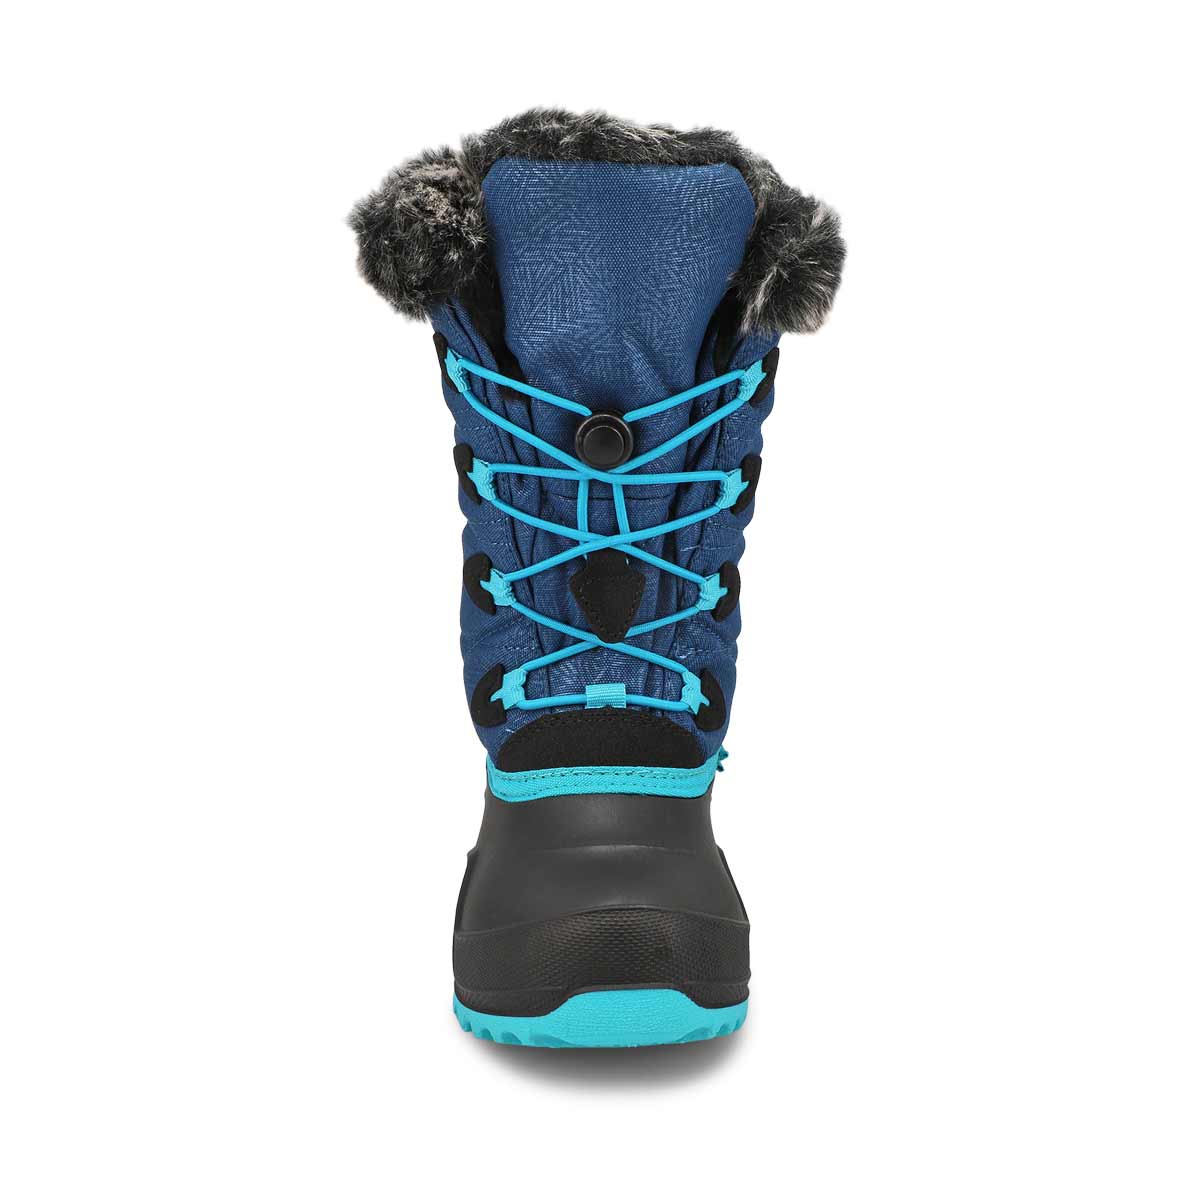 Girls' Snowgypsy 4 Waterproof Winter Boot - Navy